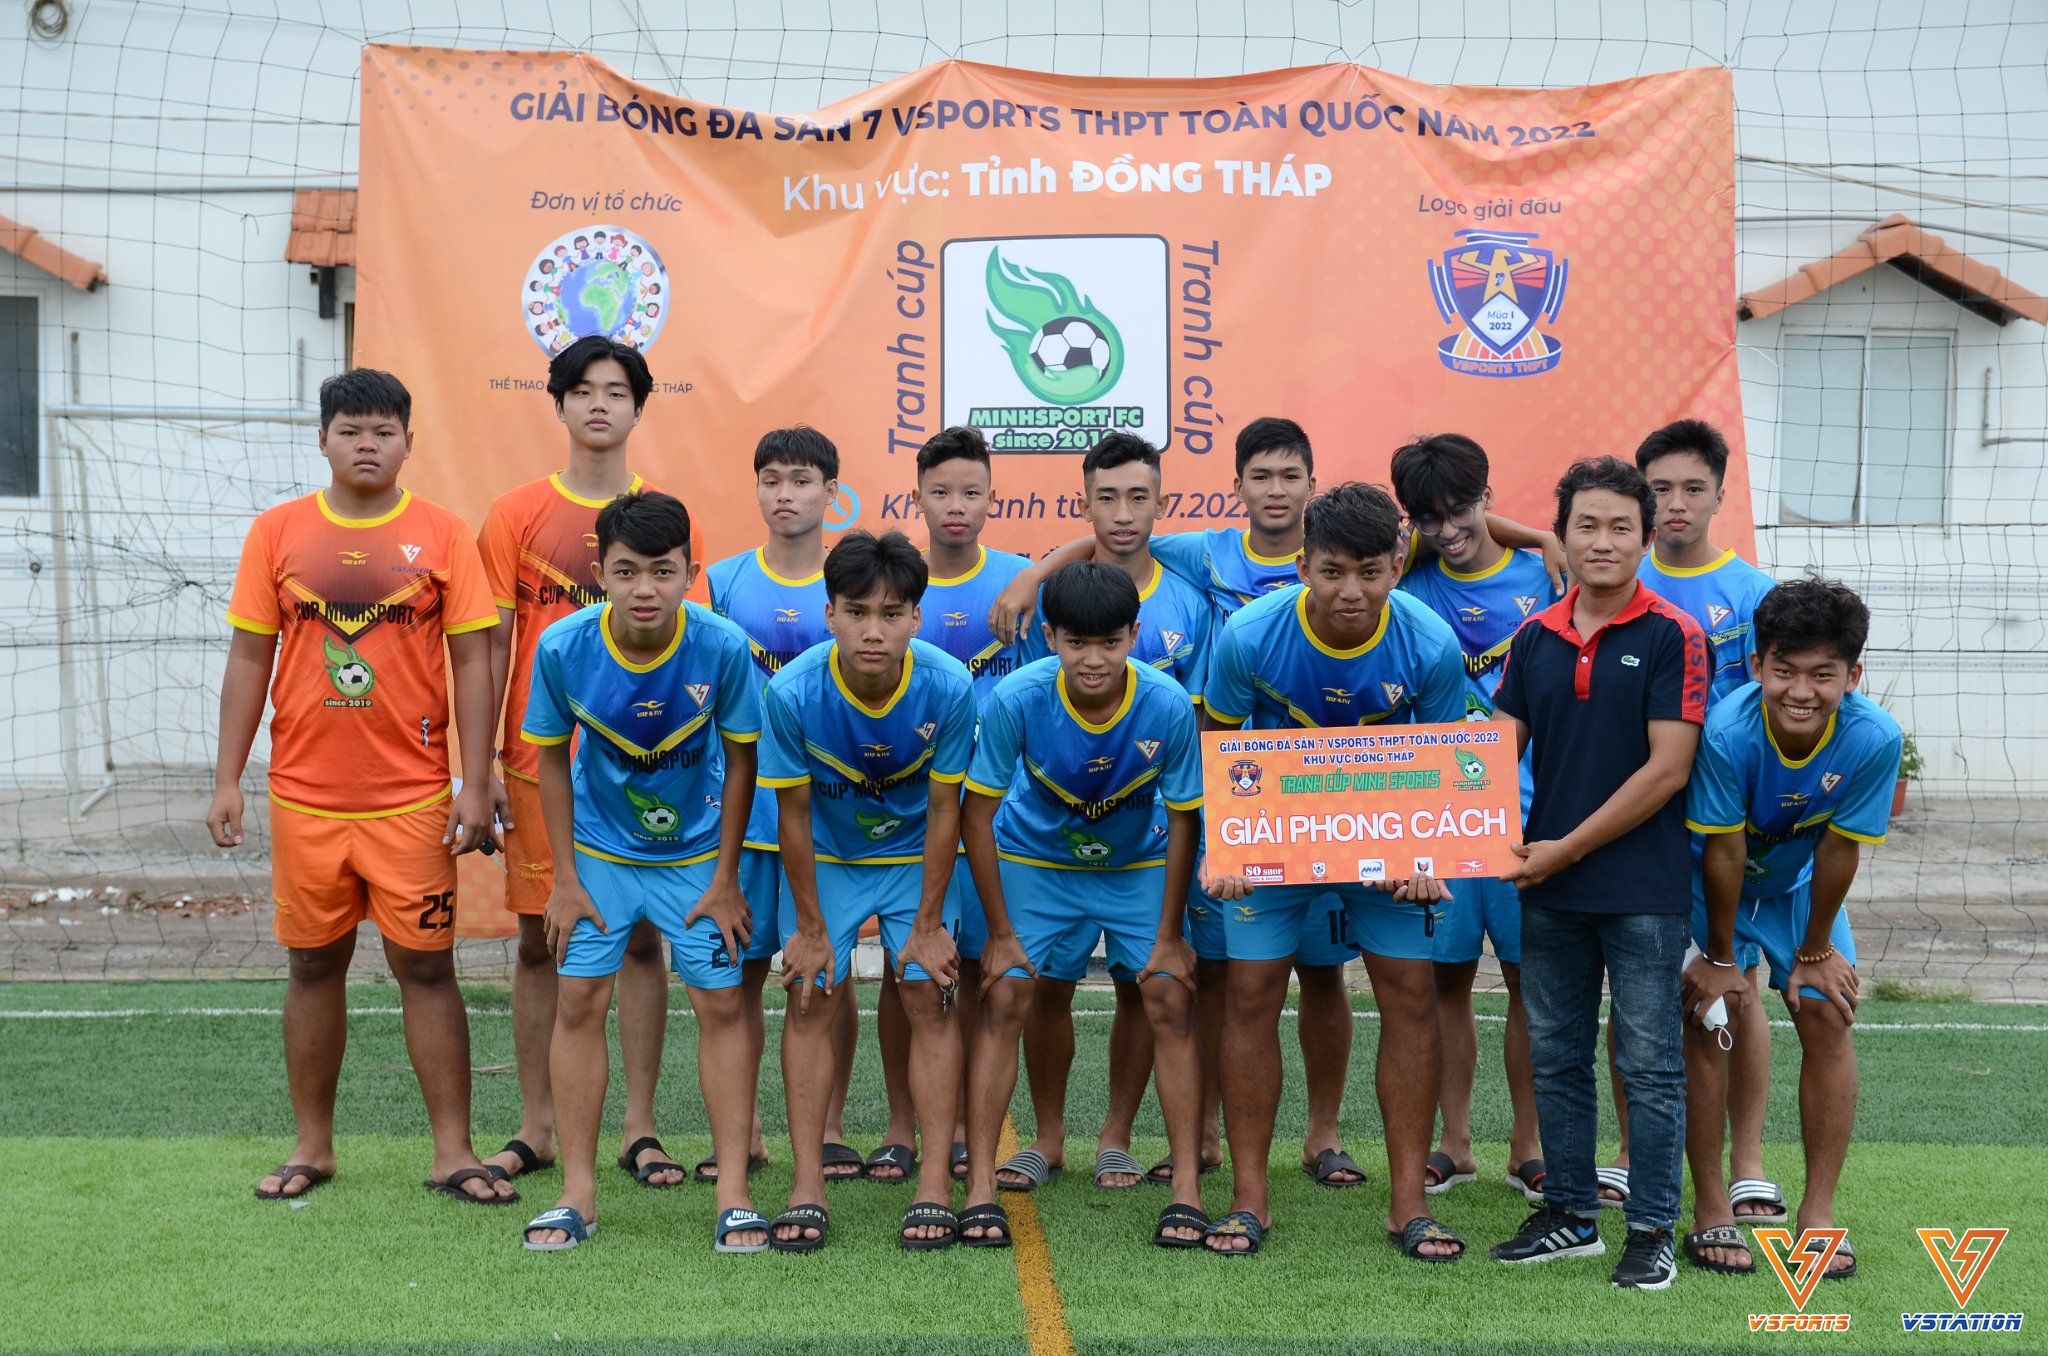 Vsports THPT tỉnh Đồng Tháp